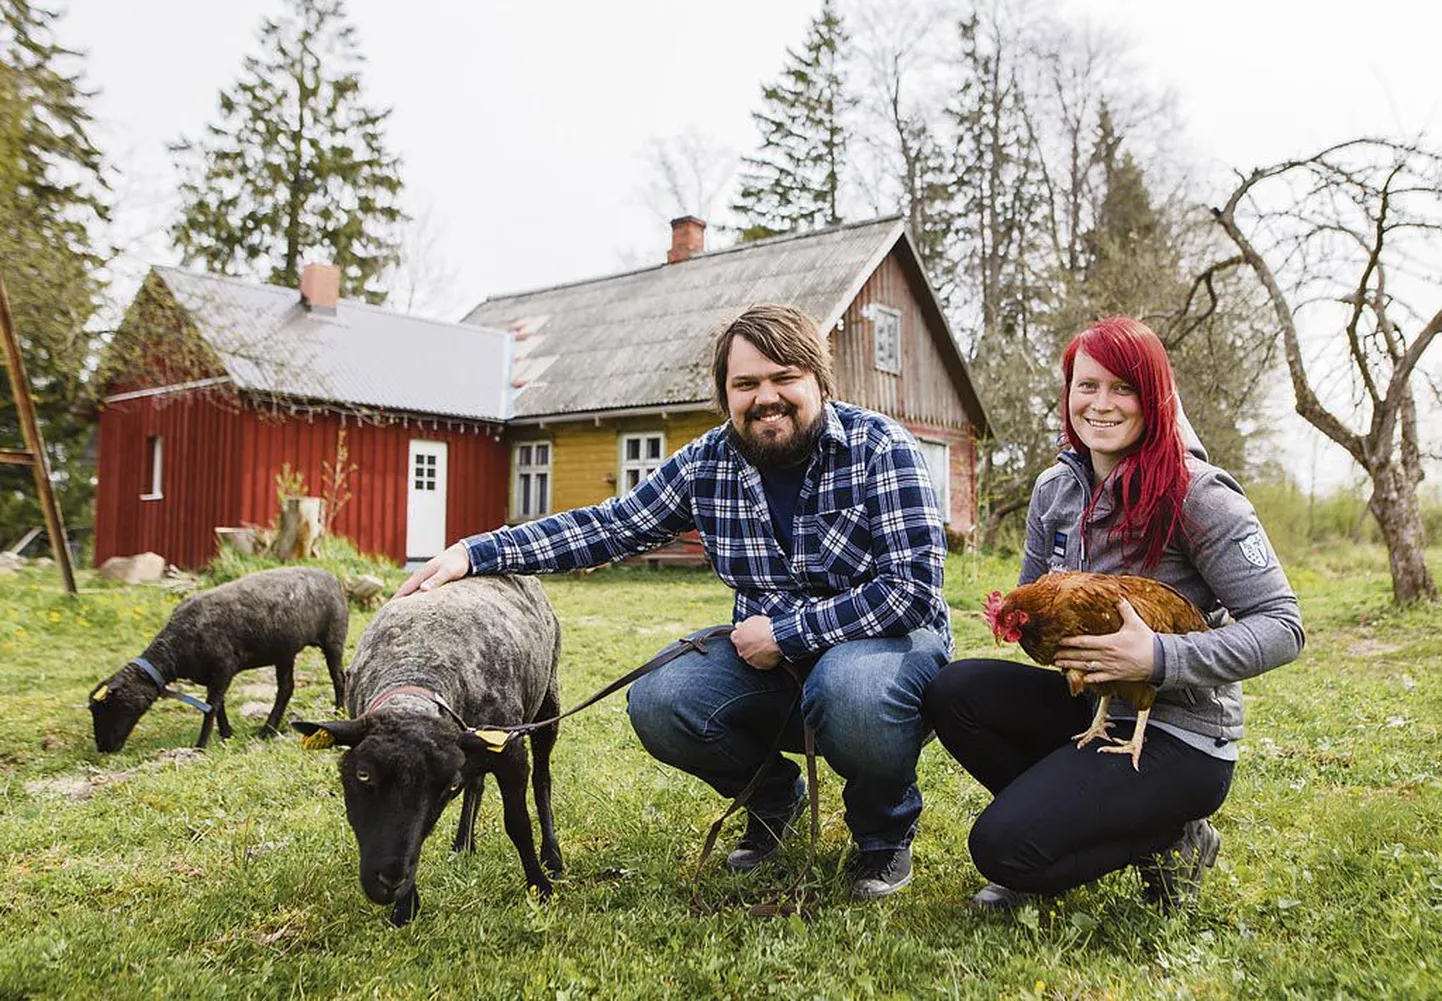 Noored talupidajad Toomas Vihmann ja Kristhel Vaht naudivad oma loomadega maaelu kogu südamest.